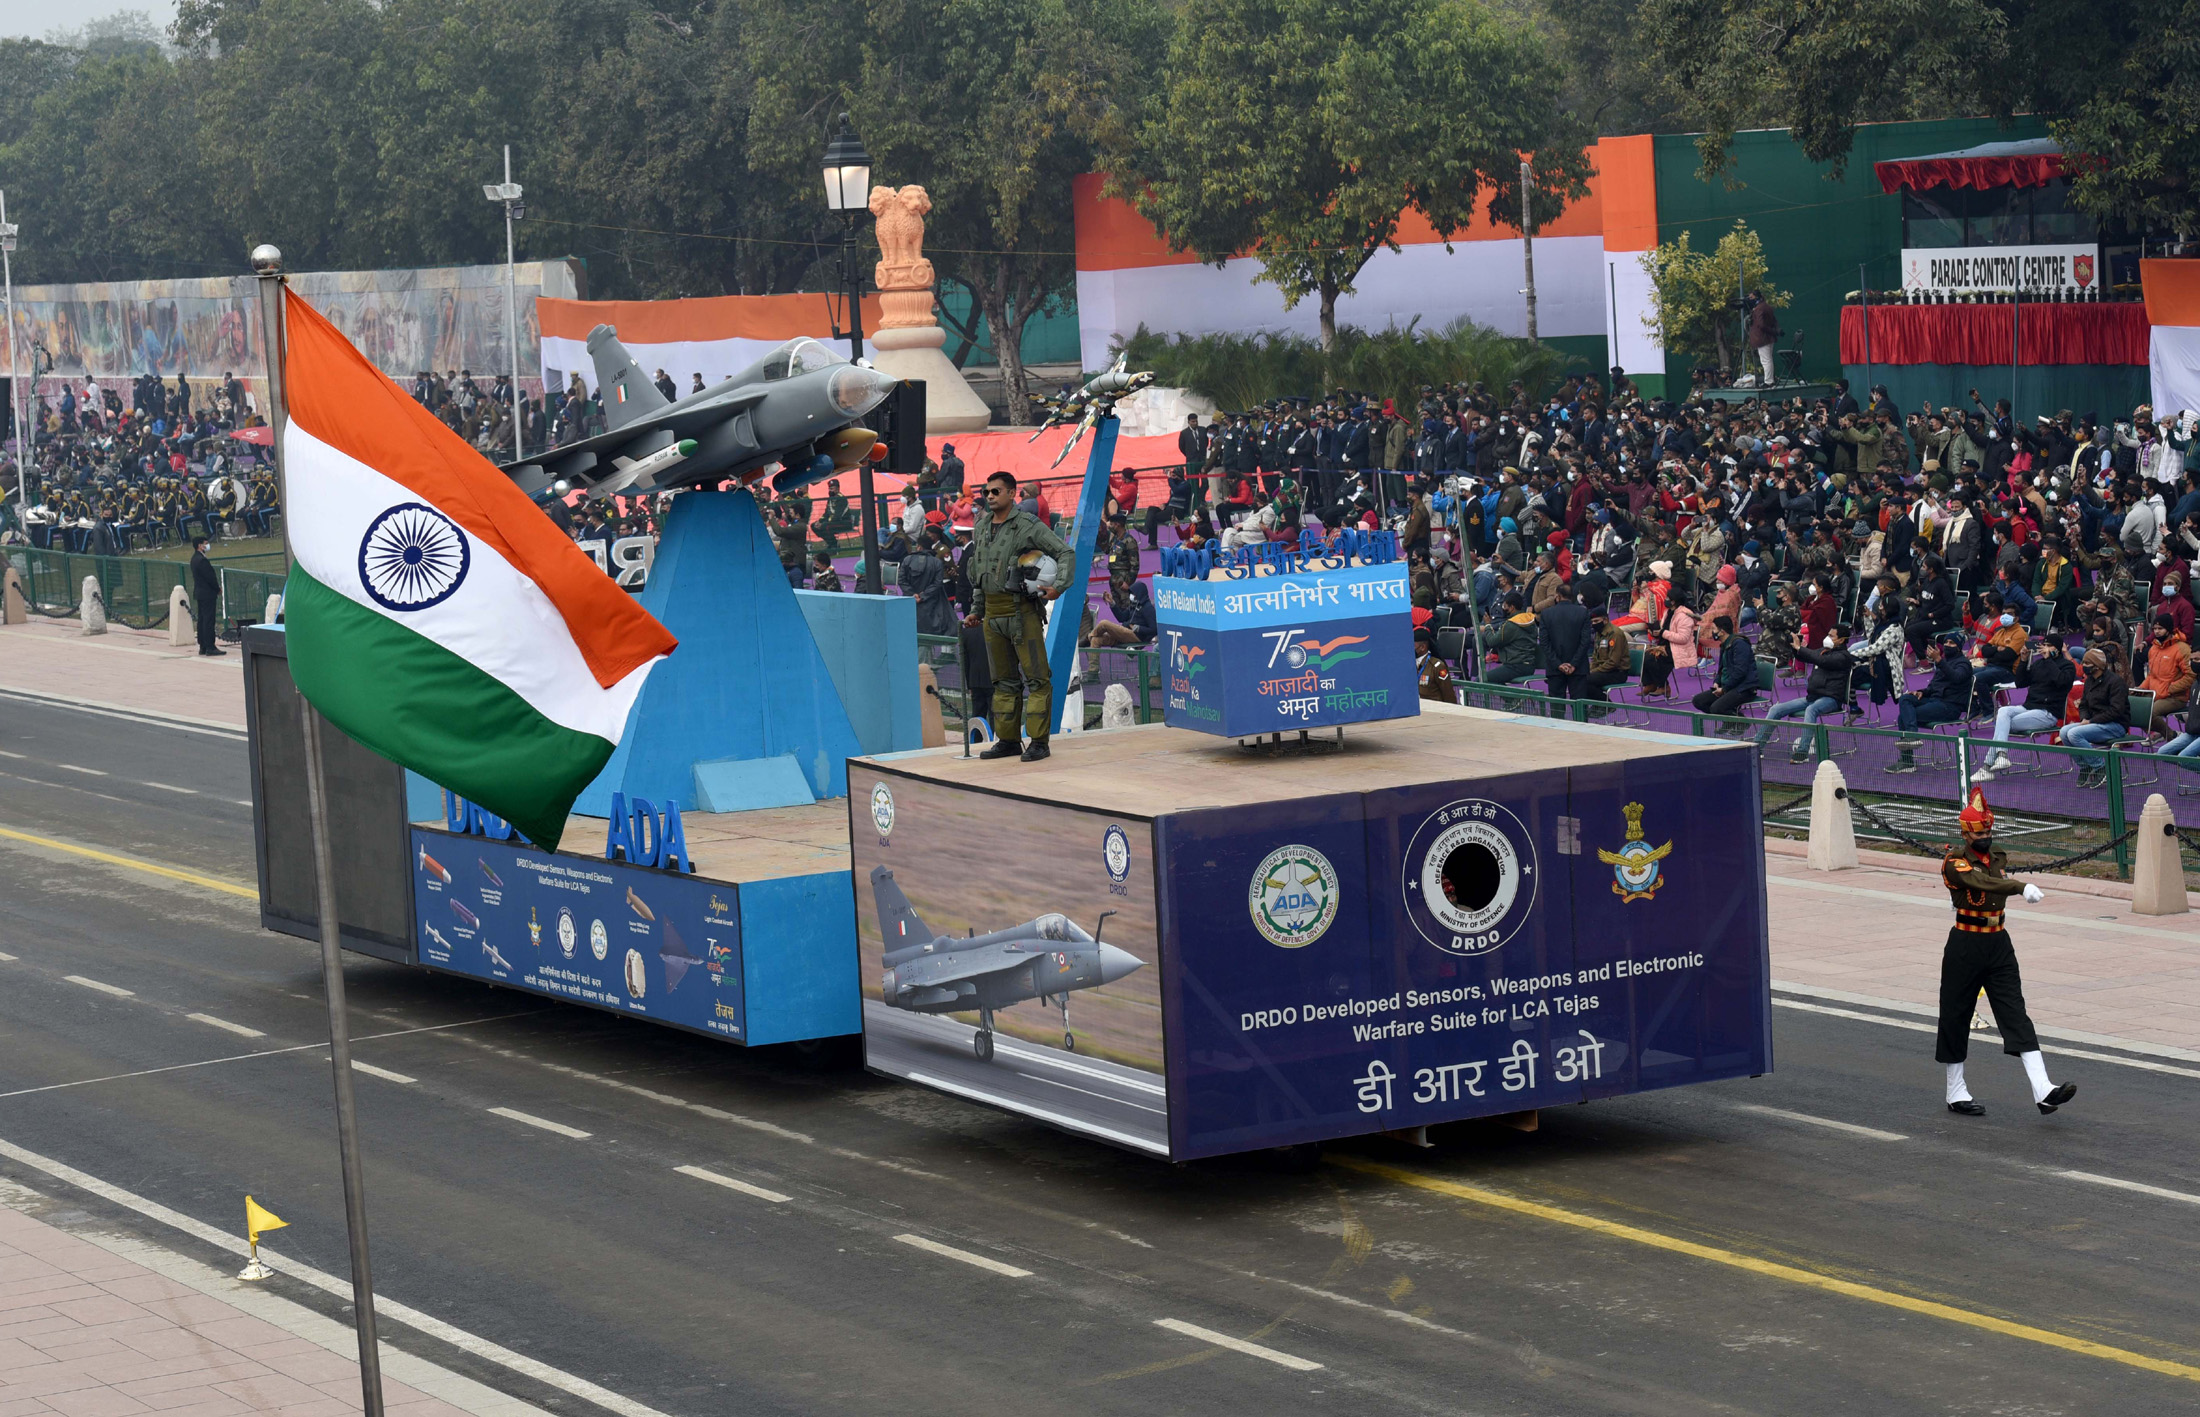 गणतंत्र दिवस परेड: भारतीय सेना के मार्चिंग दस्ते में नजर आएगा वर्दी व राइफलों का विकास